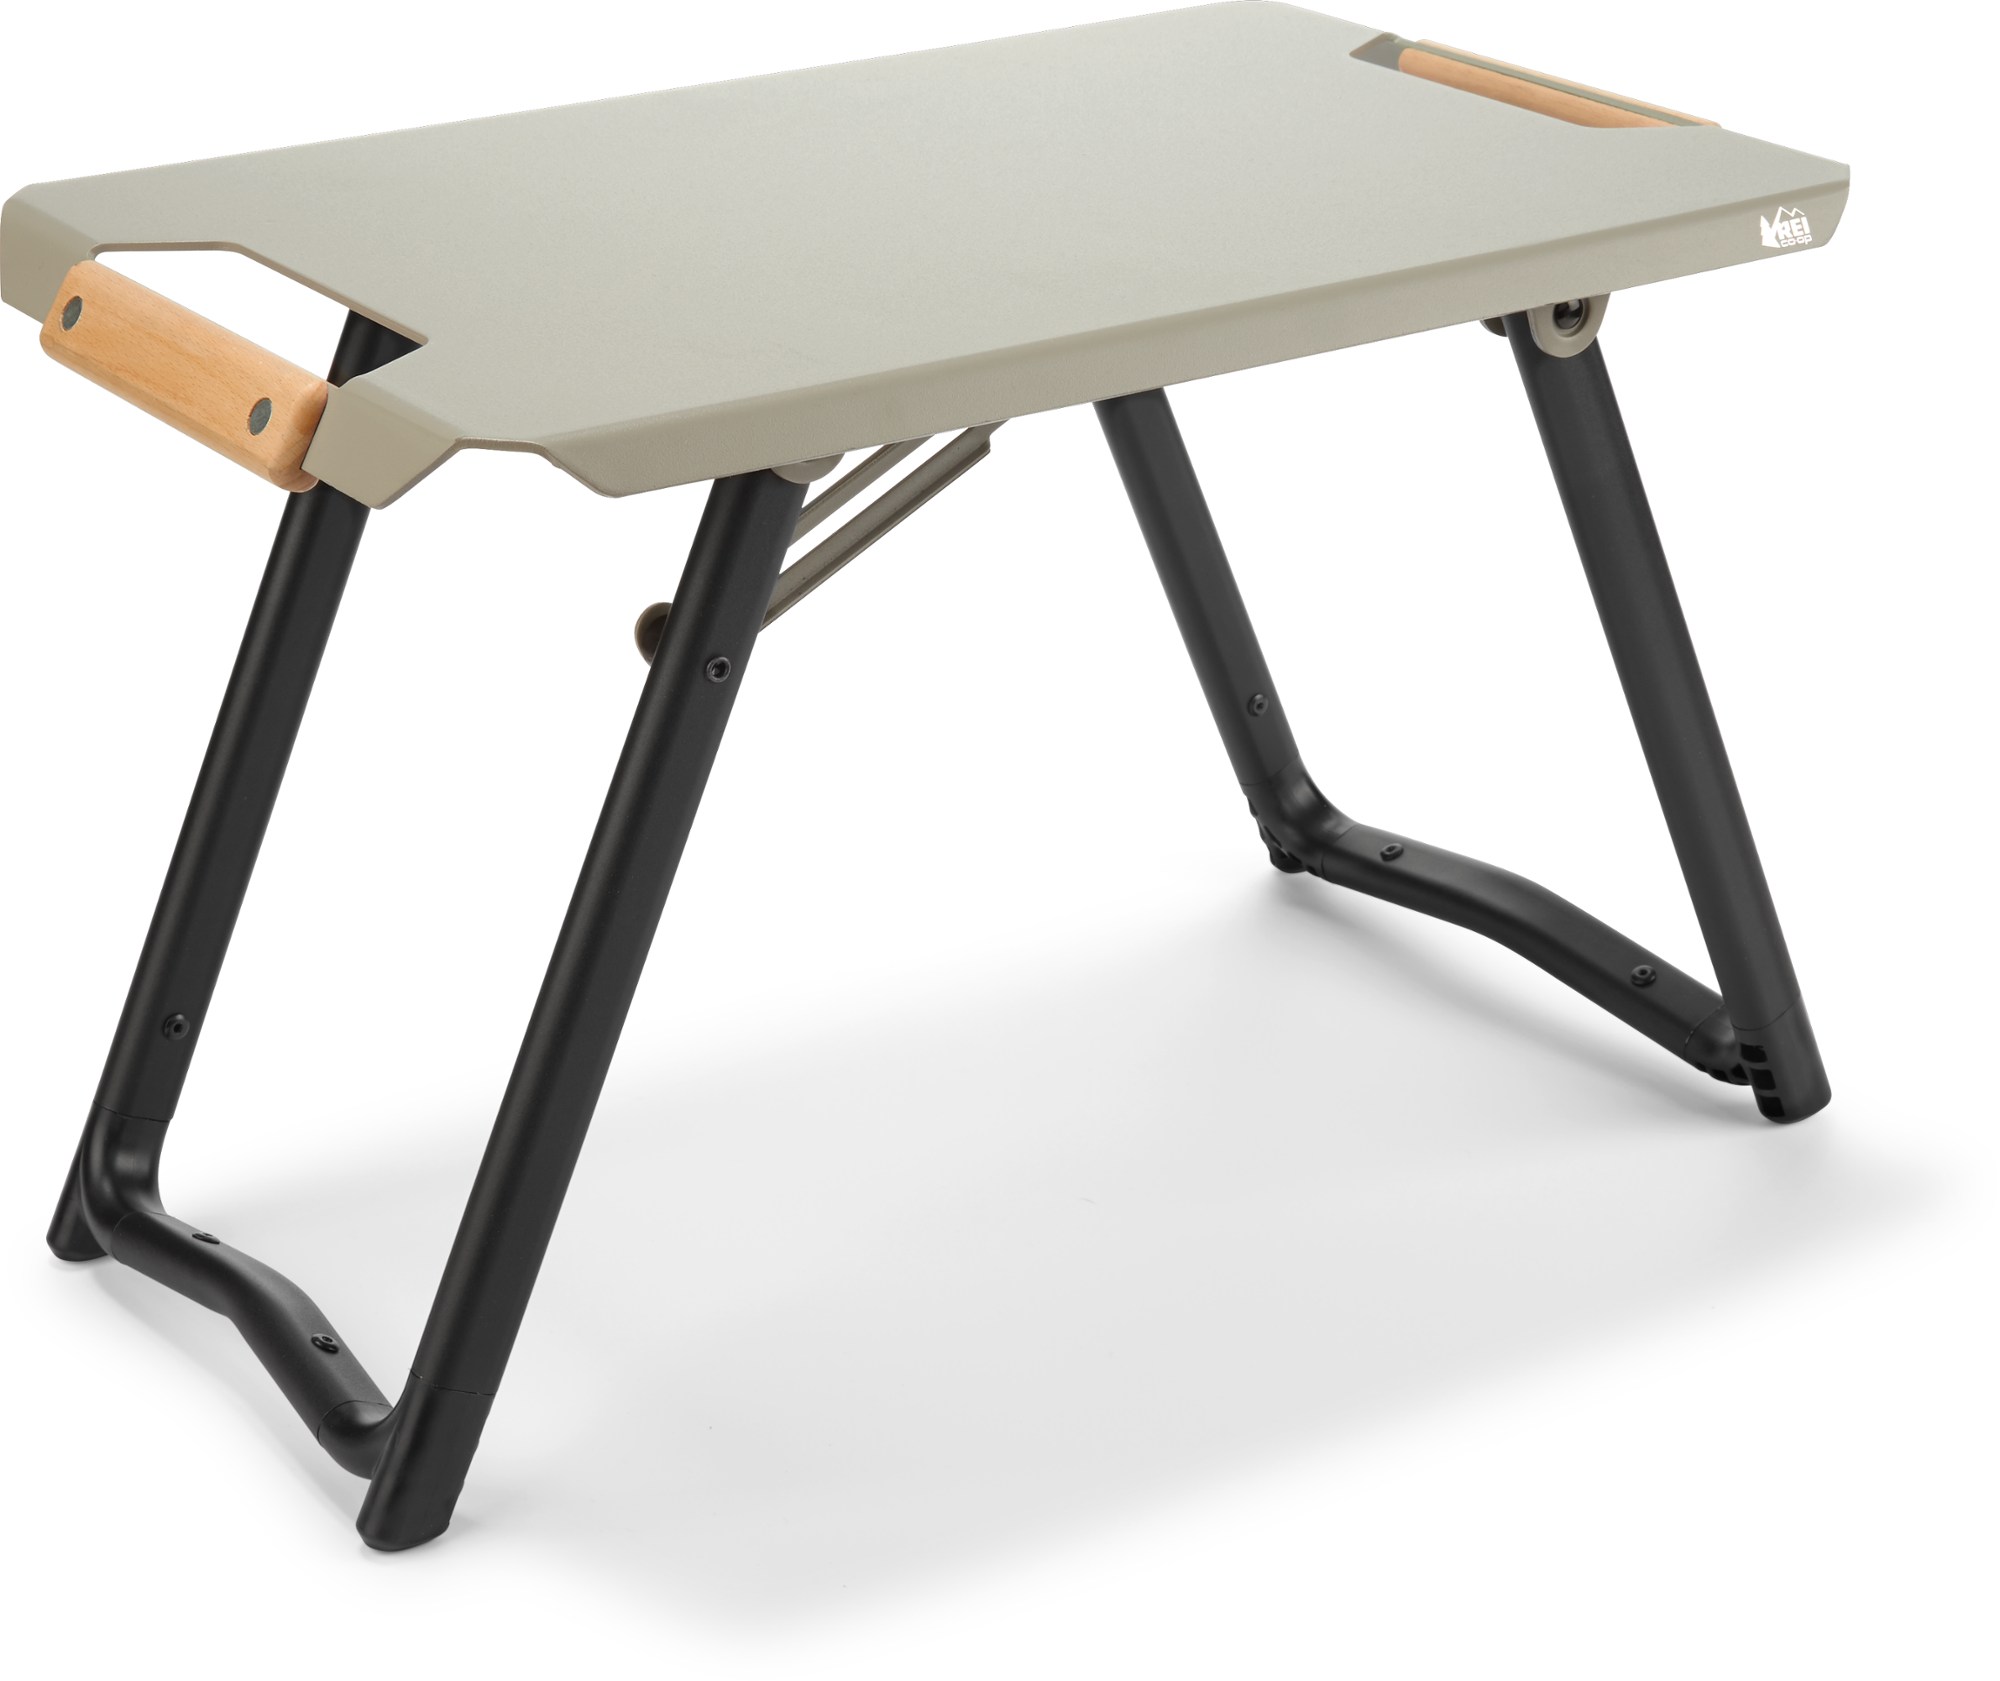 Внешний боковой столик REI Co-op, зеленый боковой столик для дивана боковой столик мраморный угловой столик светильник шкафа роскошный боковой столик скандинавский маленький жу